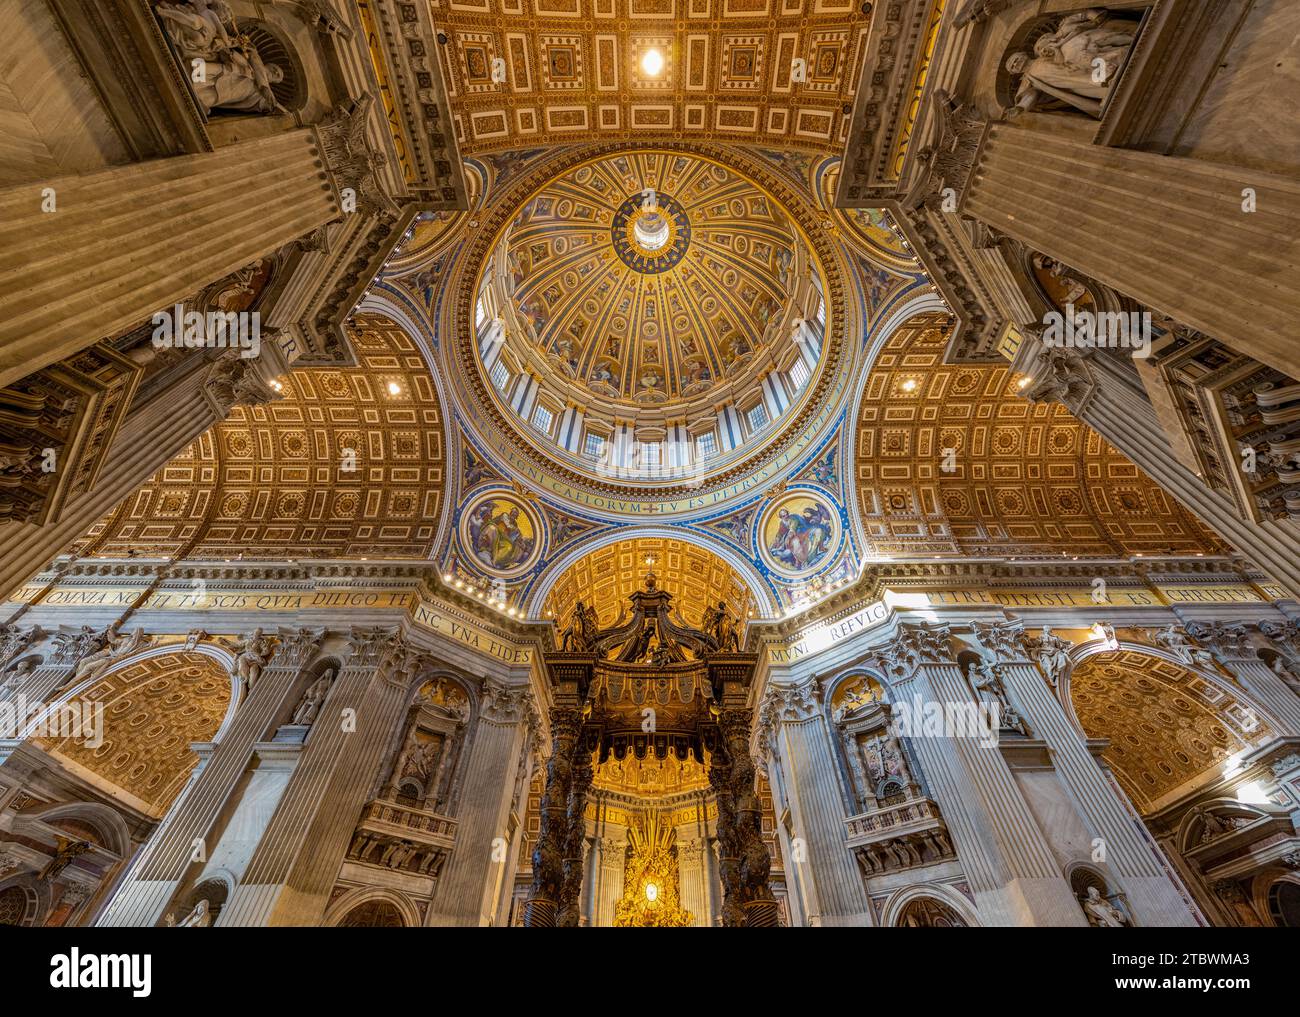 Une photo de l'énorme dôme de la St. La basilique Pierre, l'autel et les fresques environnantes et l'architecture vue de l'intérieur Banque D'Images